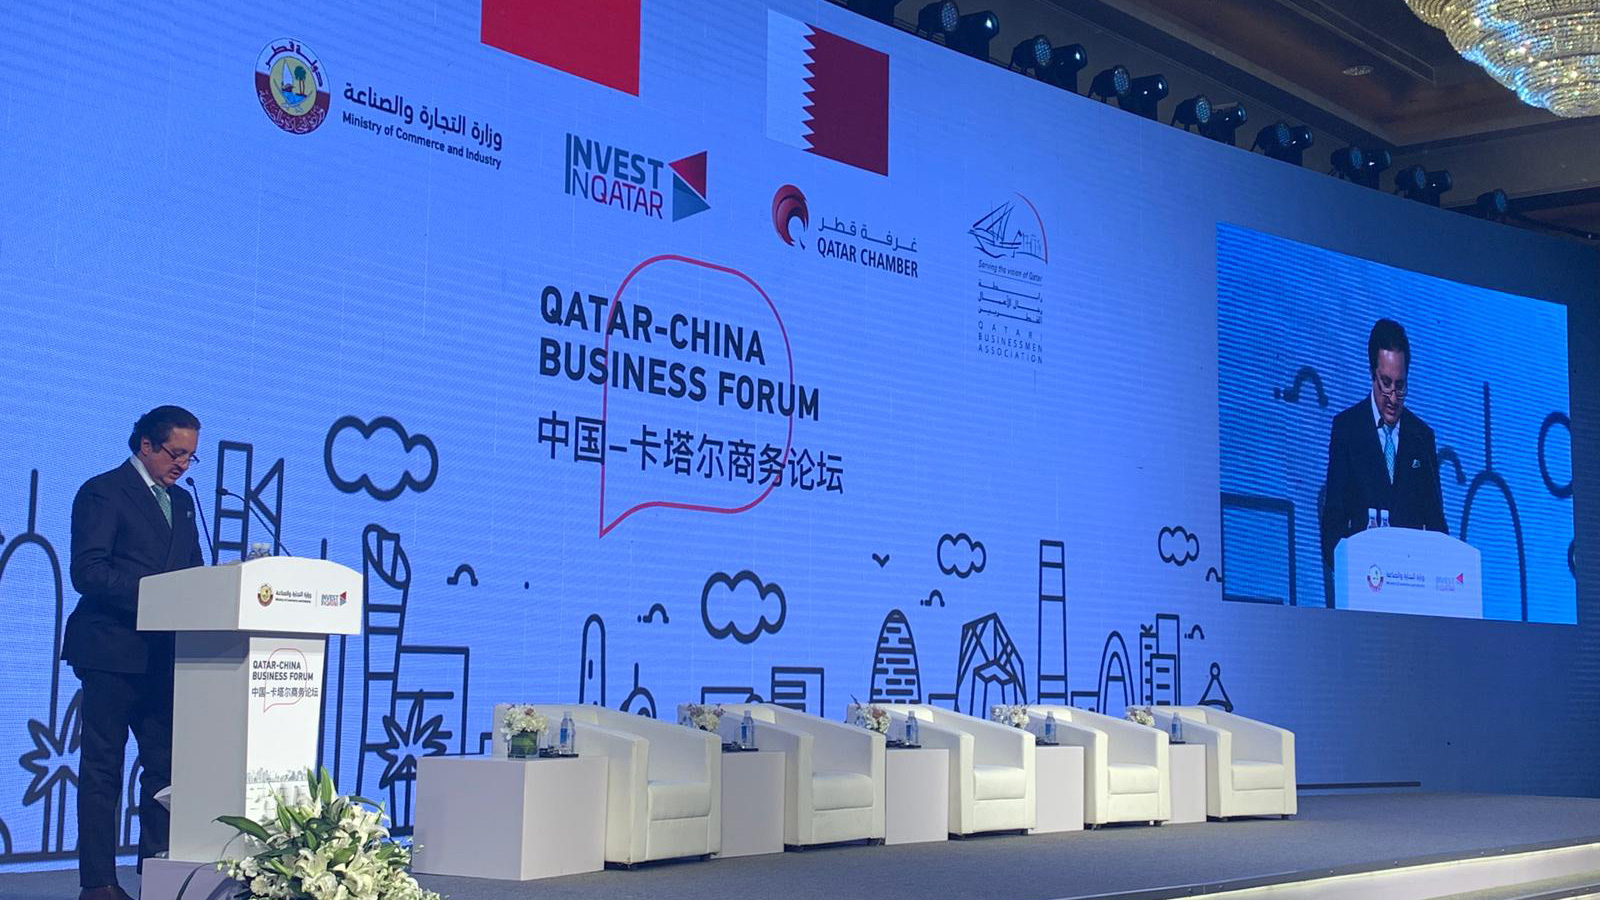  رئيس غرفة قطر يتحدث في منتدى الأعمال القطري الصيني (الجزيرة)